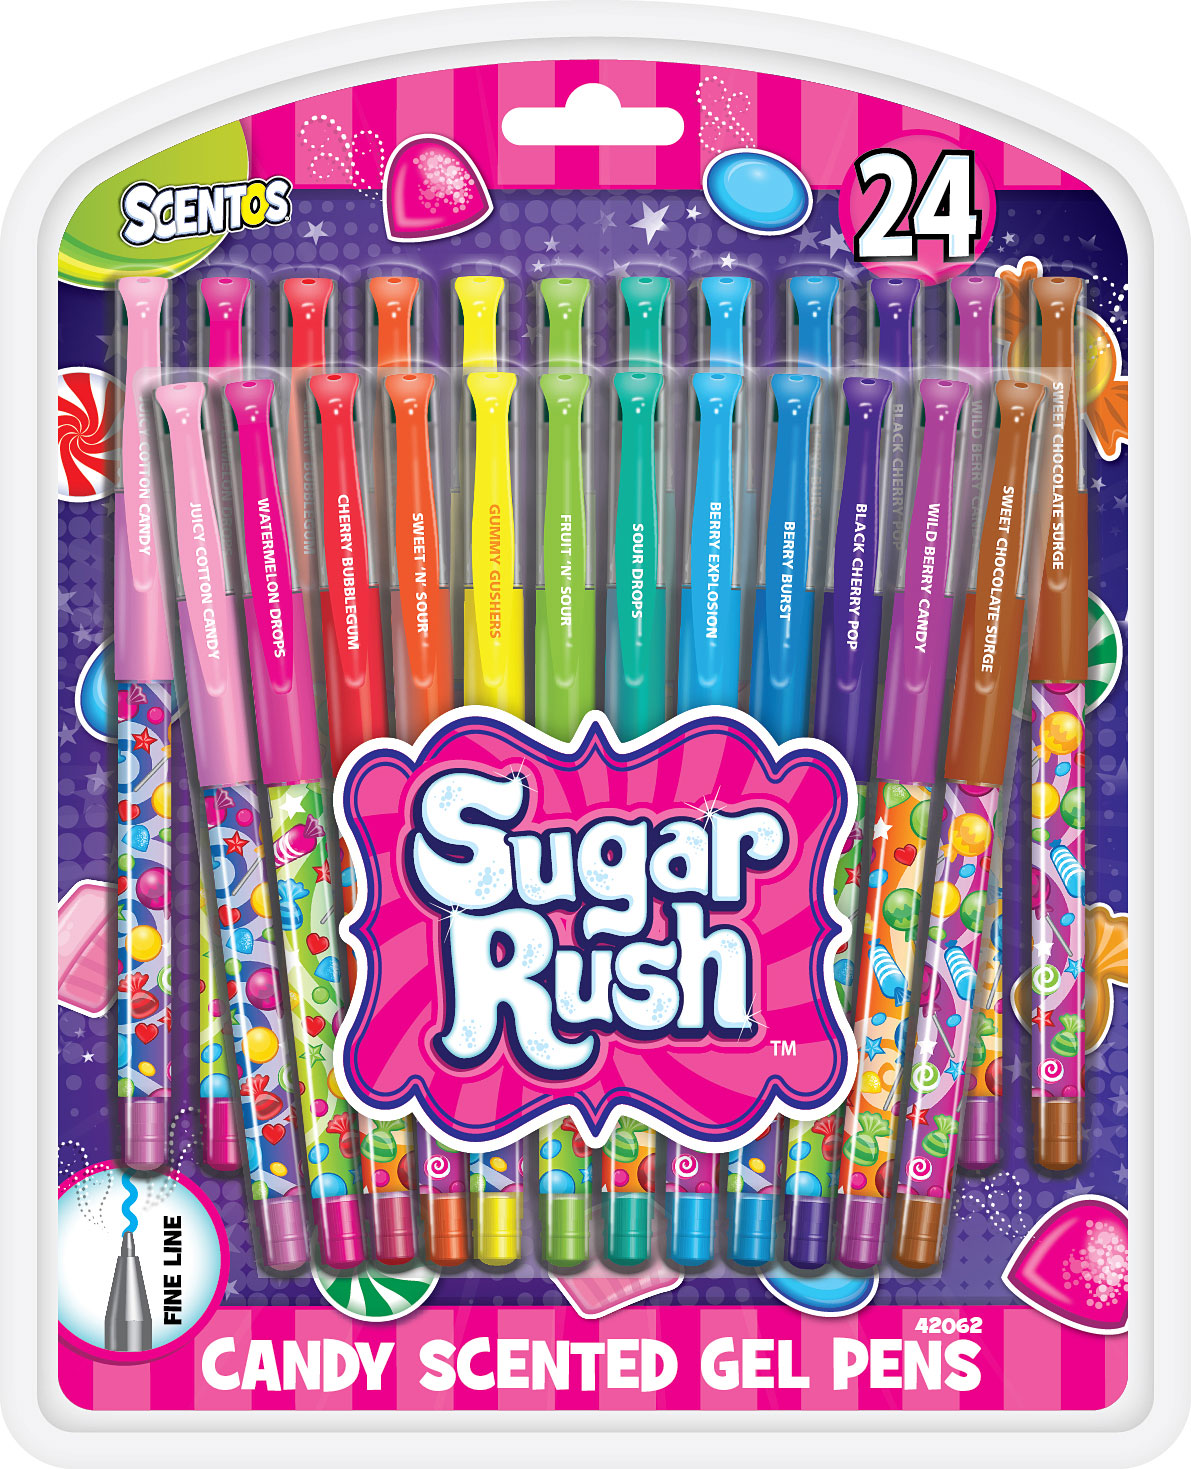 Scented Sugar Rush Gel Pens 24pk